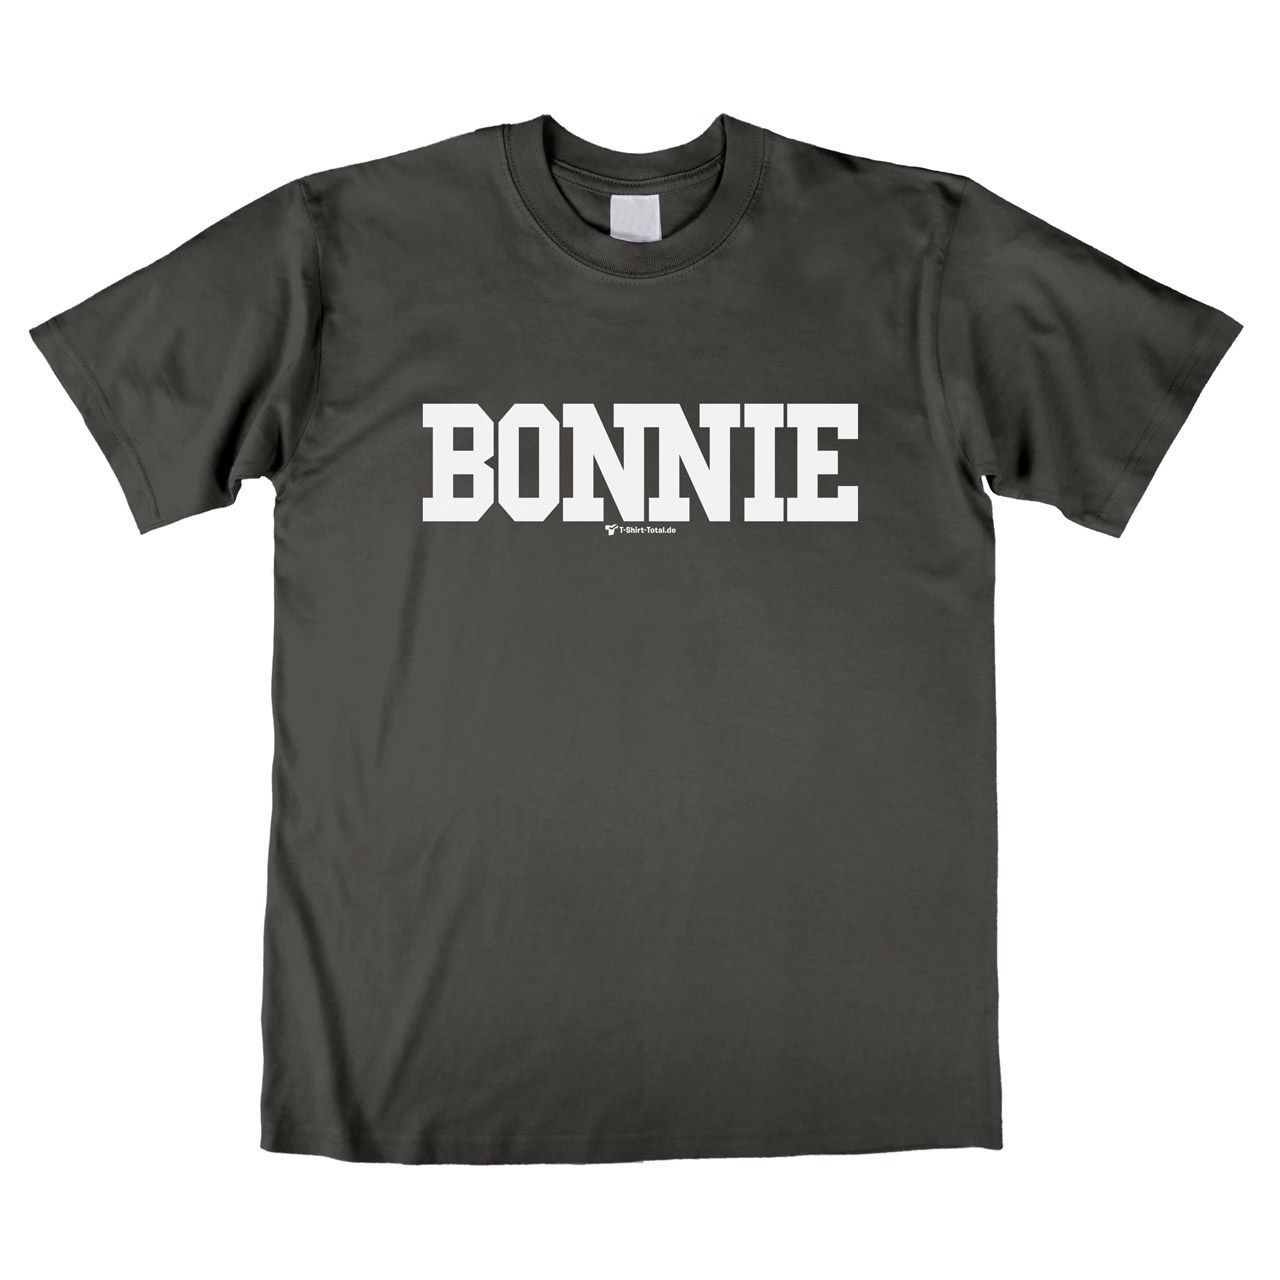 Bonnie Unisex T-Shirt grau Small